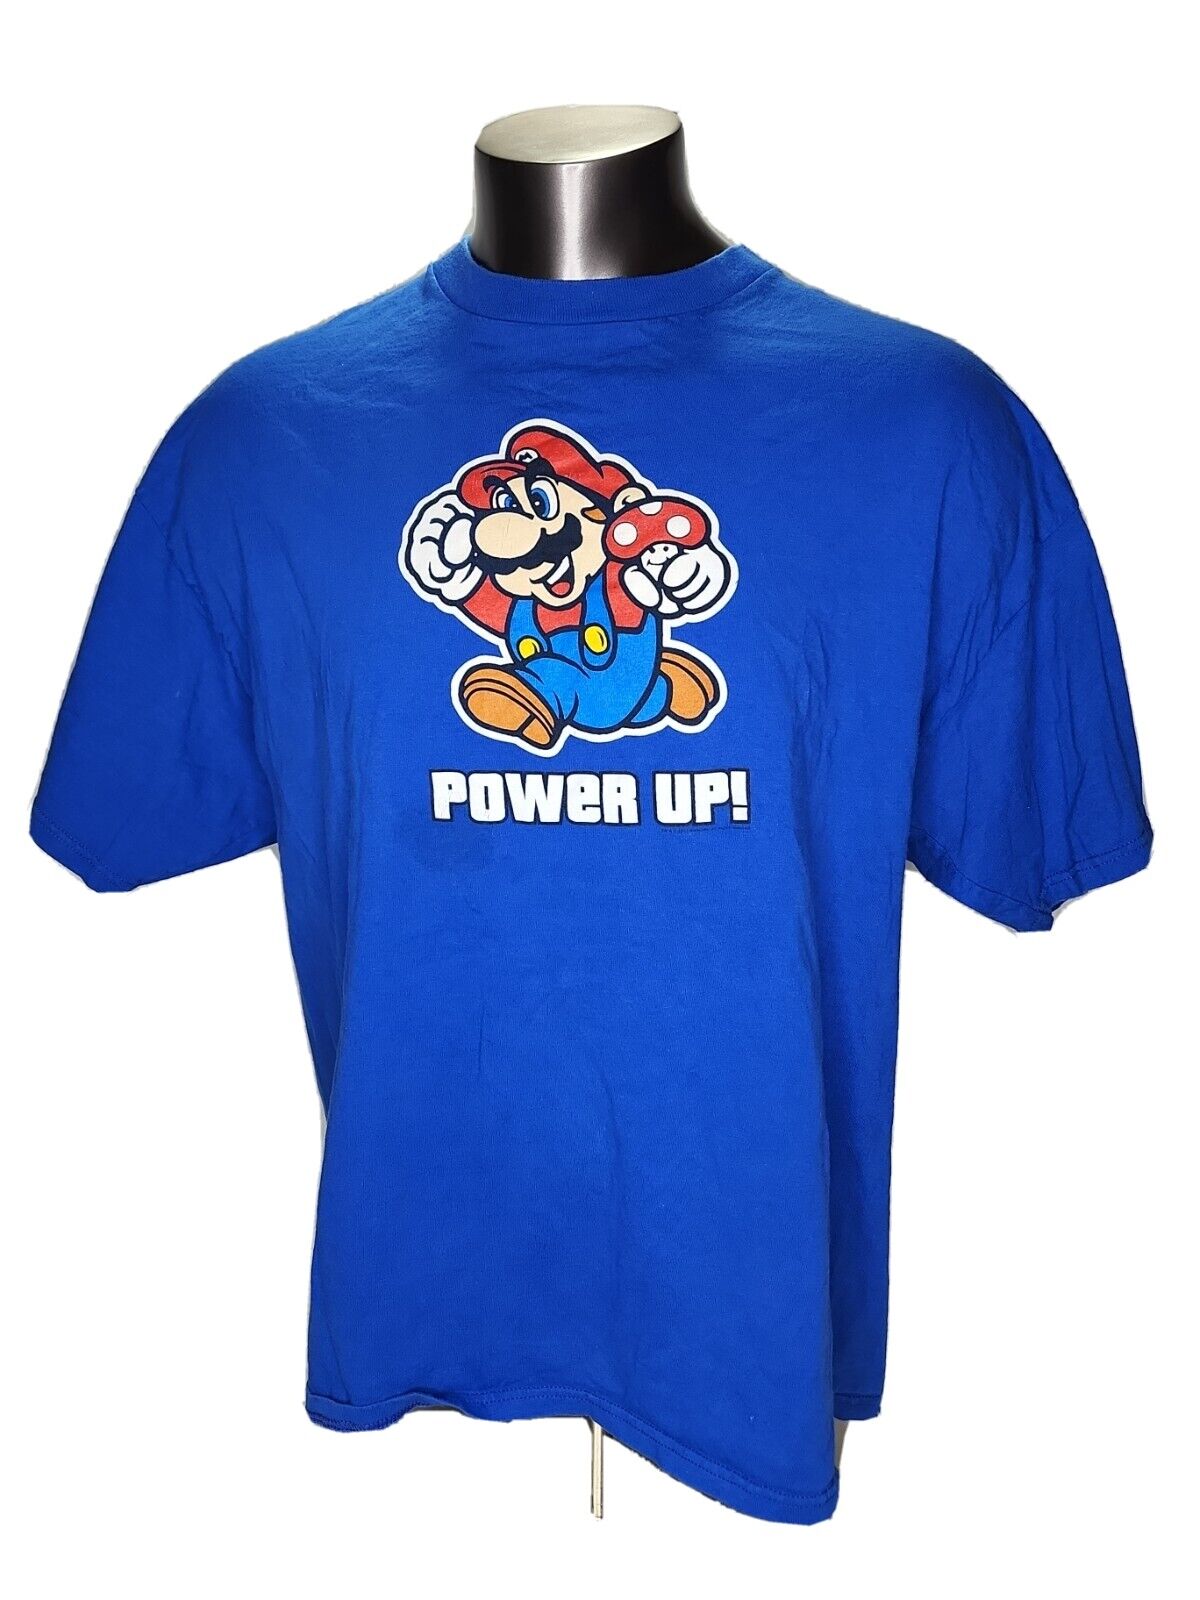 Mariopoweruptshirt.jpg